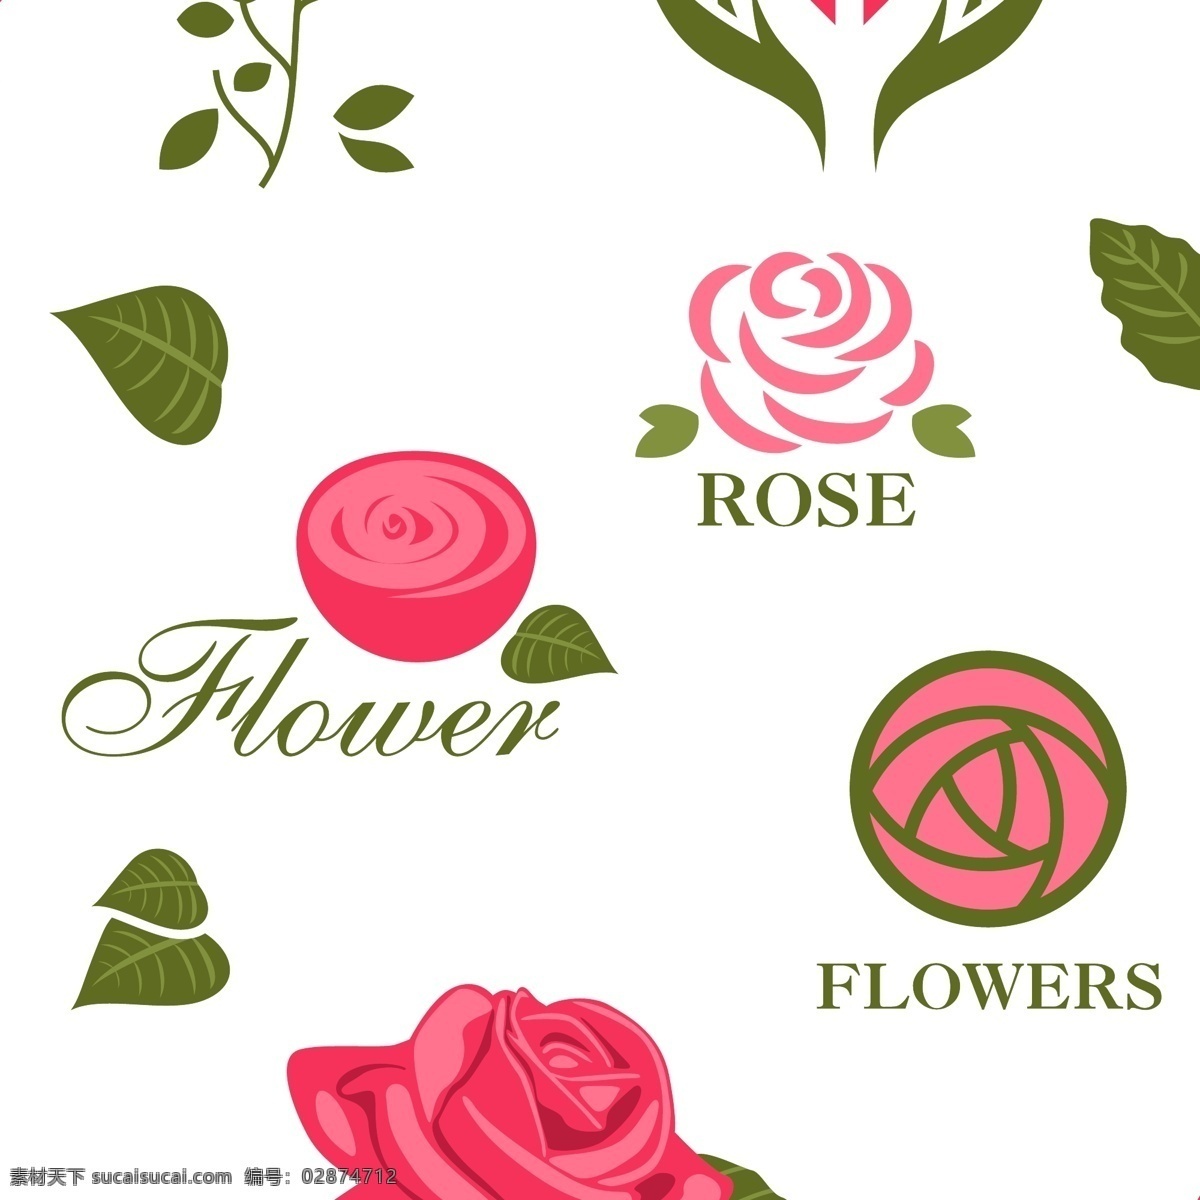 矢量玫瑰 矢量 玫瑰 图案 图标 标识 logo 标志 绿叶 简笔 线头 手绘 鲜花 花朵 矢量集 文化艺术